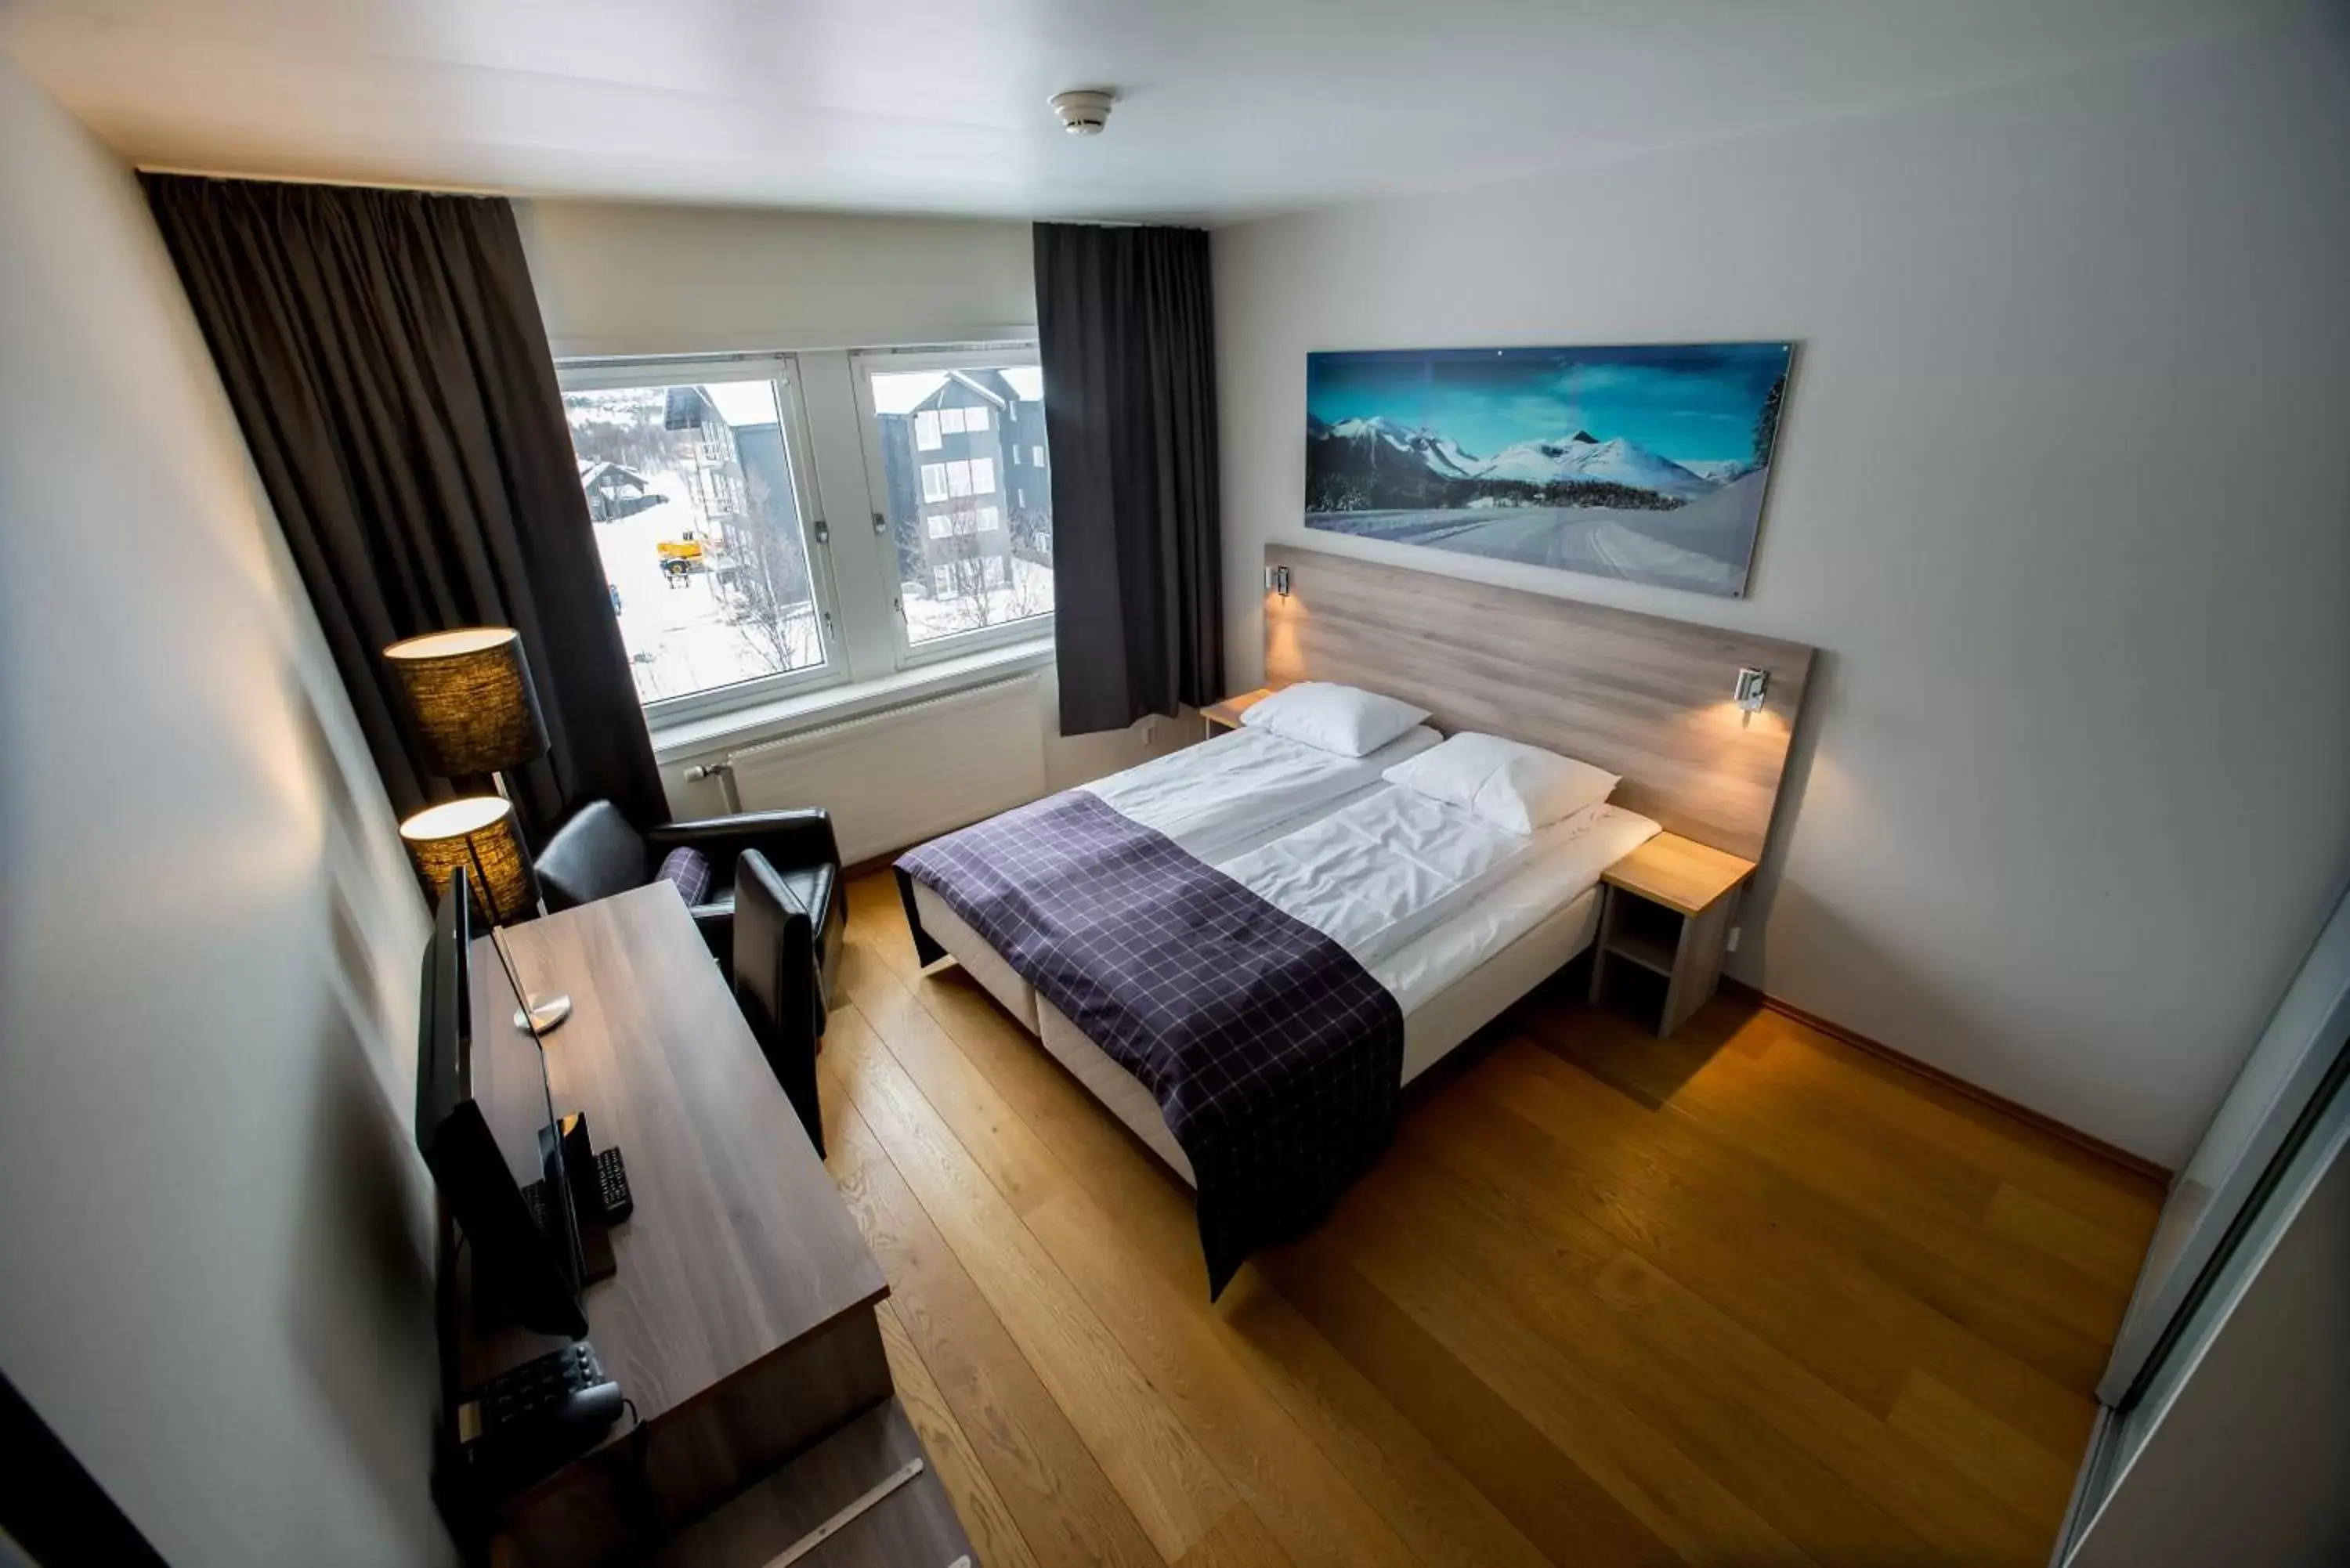 Bedroom in Geilo Hotel